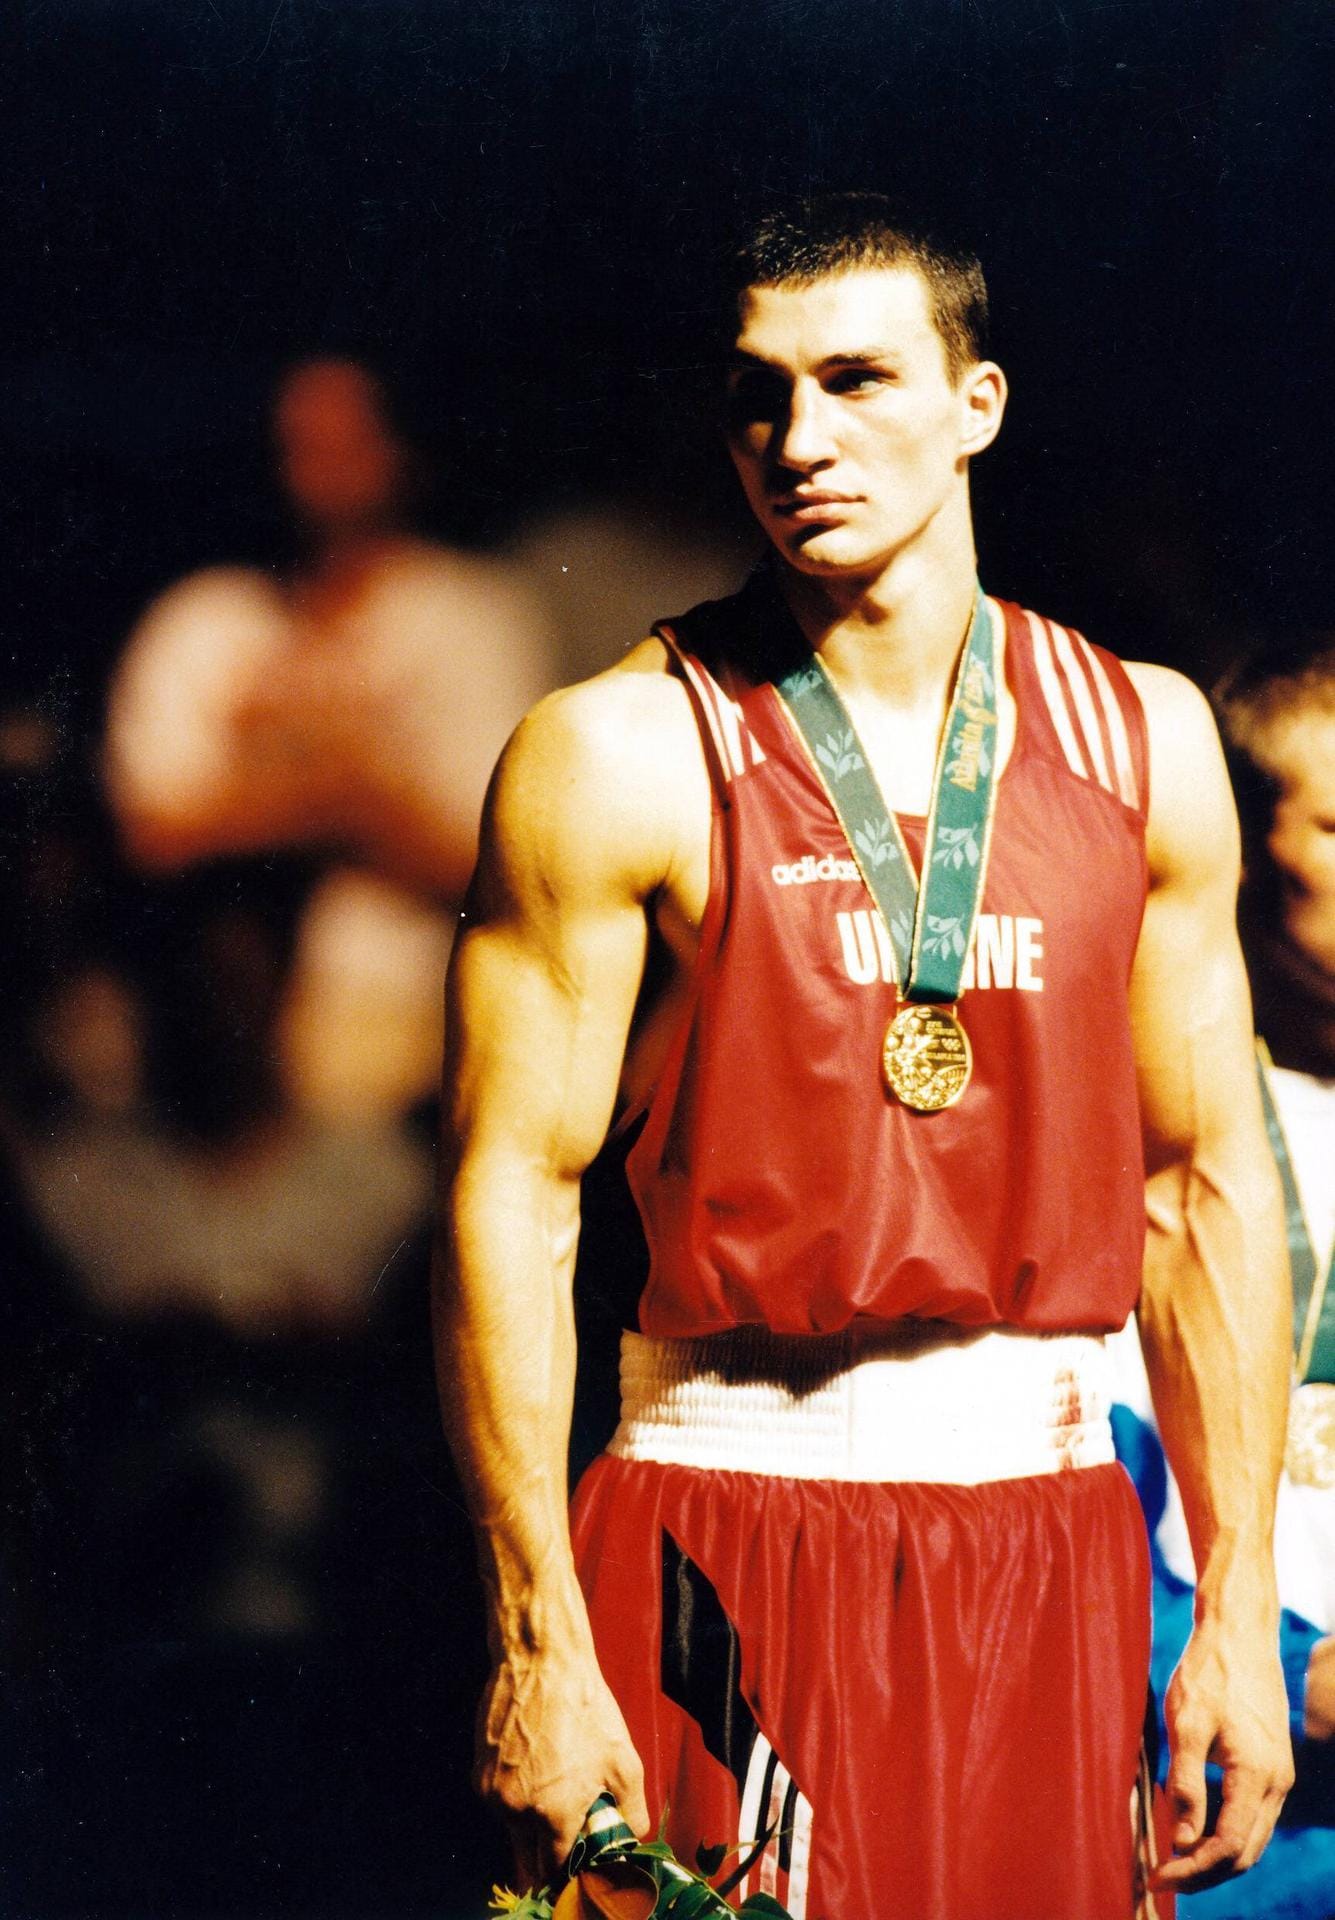 1996 gewann Wladimir Klitschko die Goldmedaille in Superschwergewicht bei den Olympischen Spielen in Atlanta. Danach wurde er Profi-Boxer und startete eine einmalige Karriere.